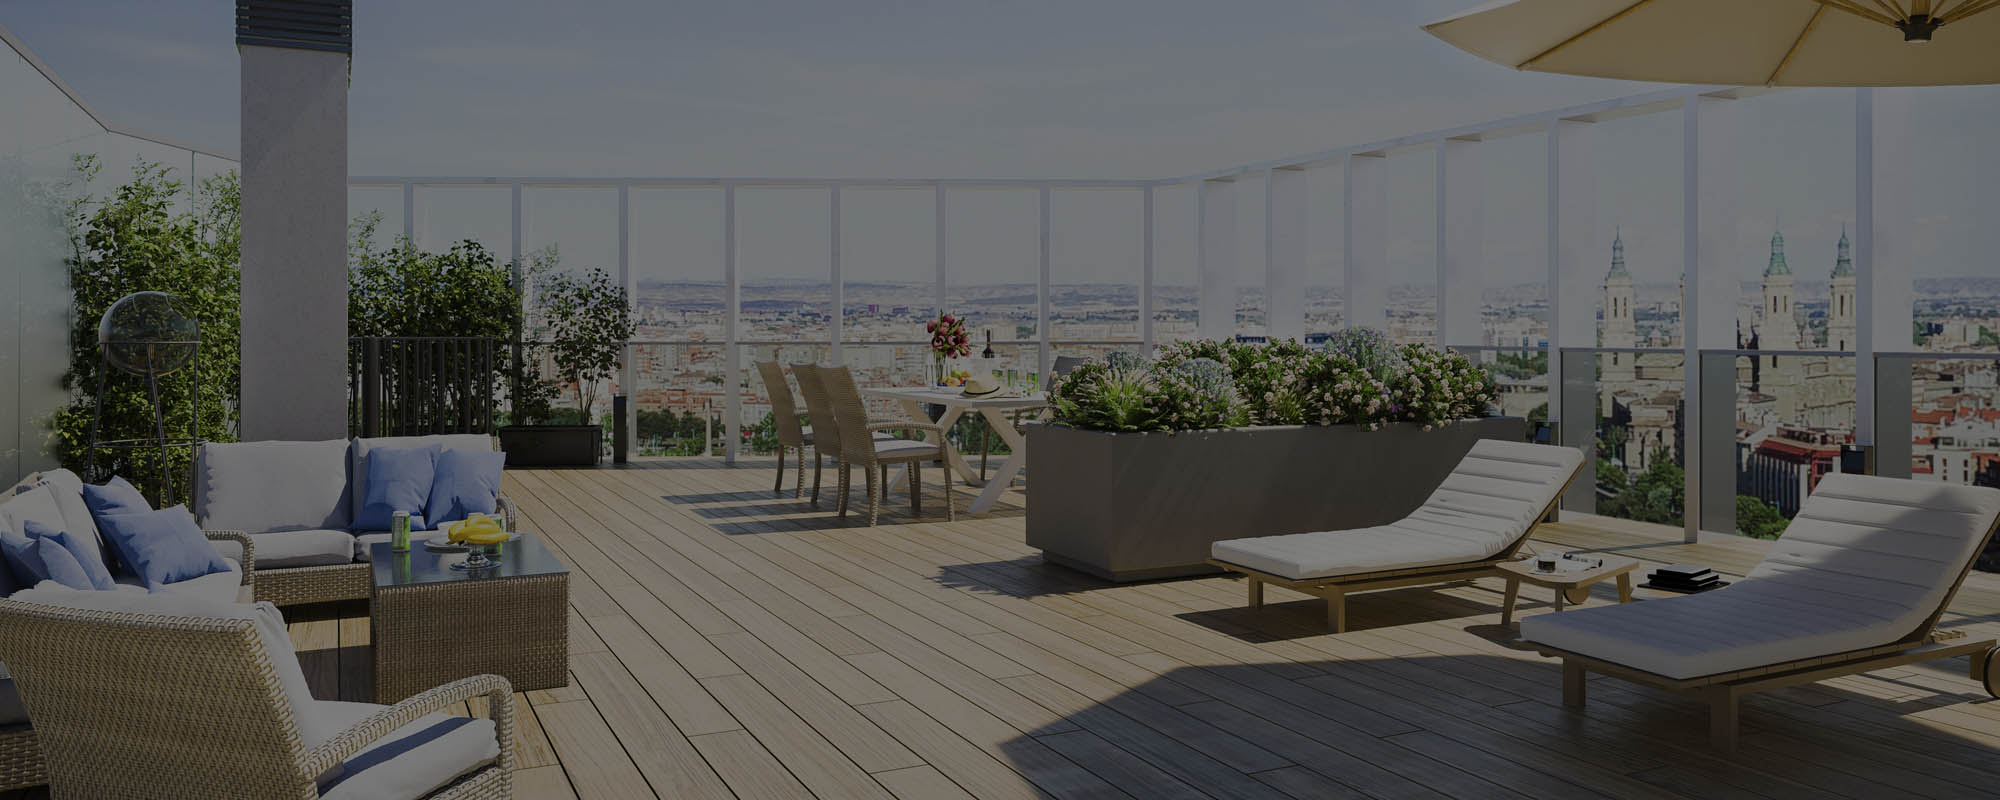 Renders 3D de las terrazas en un edificio residencial en Zaragoza